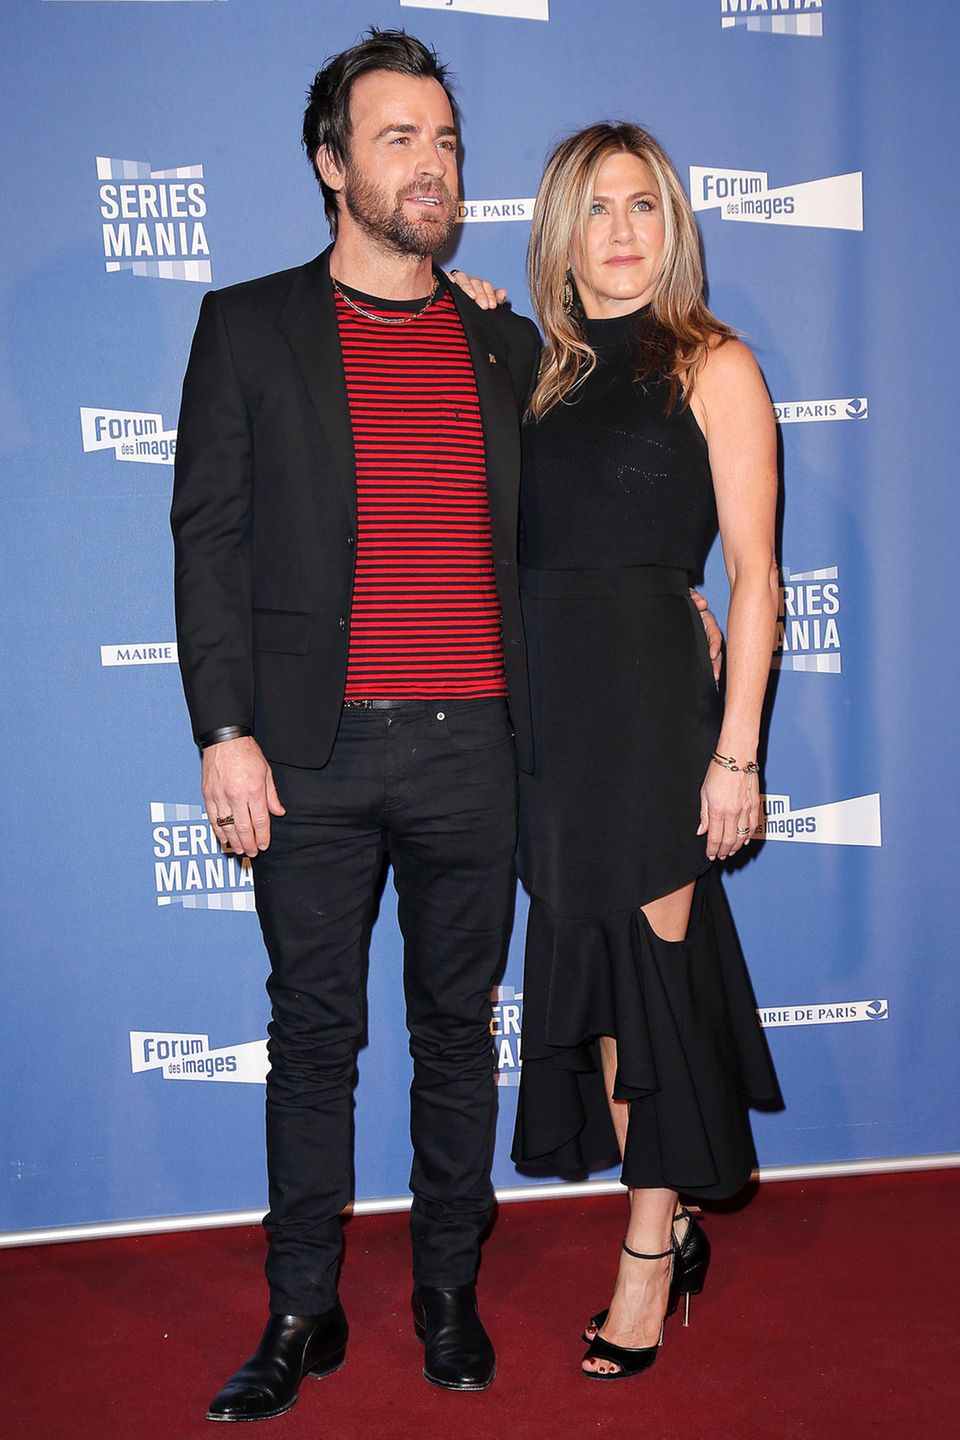 Zum letzten Mal betreten Jennifer Aniston und Justin Theroux im April 2017 den roten Teppich gemeinsam. Beim Photocall von "Series Mania" gibt Justin einen lässigen Anblick ab, während sich Jennifer im eleganten Look präsentiert.